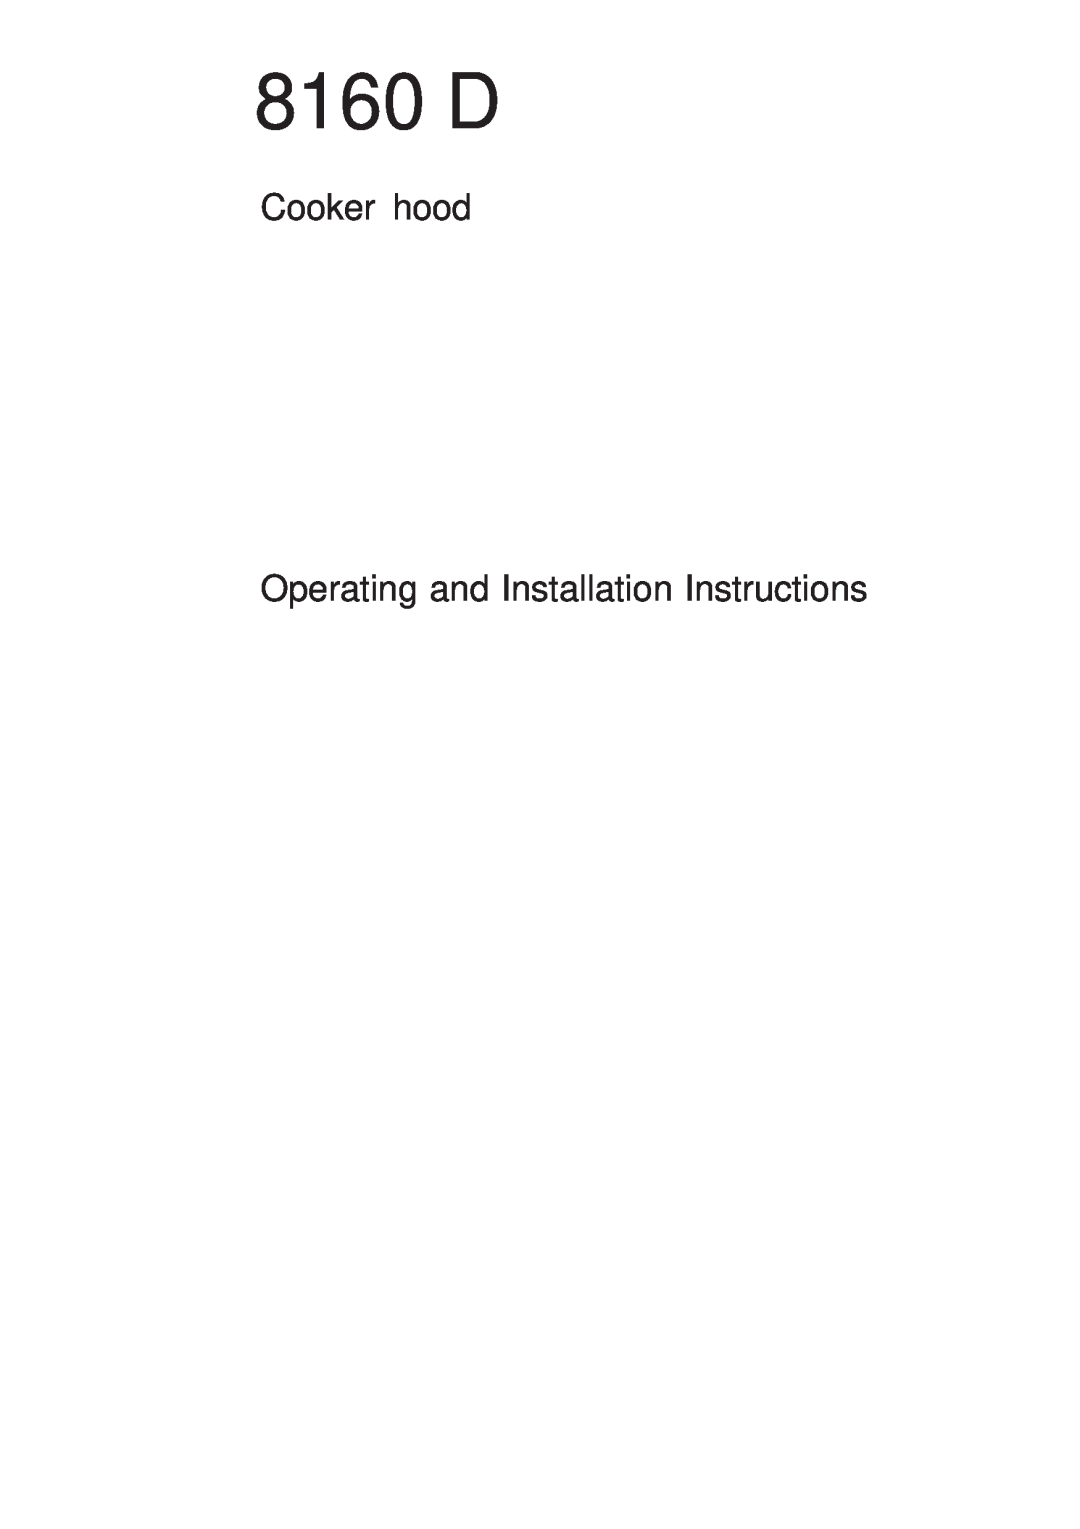 AEG 8160 D installation instructions Cooker hood, Operating and Installation Instructions 